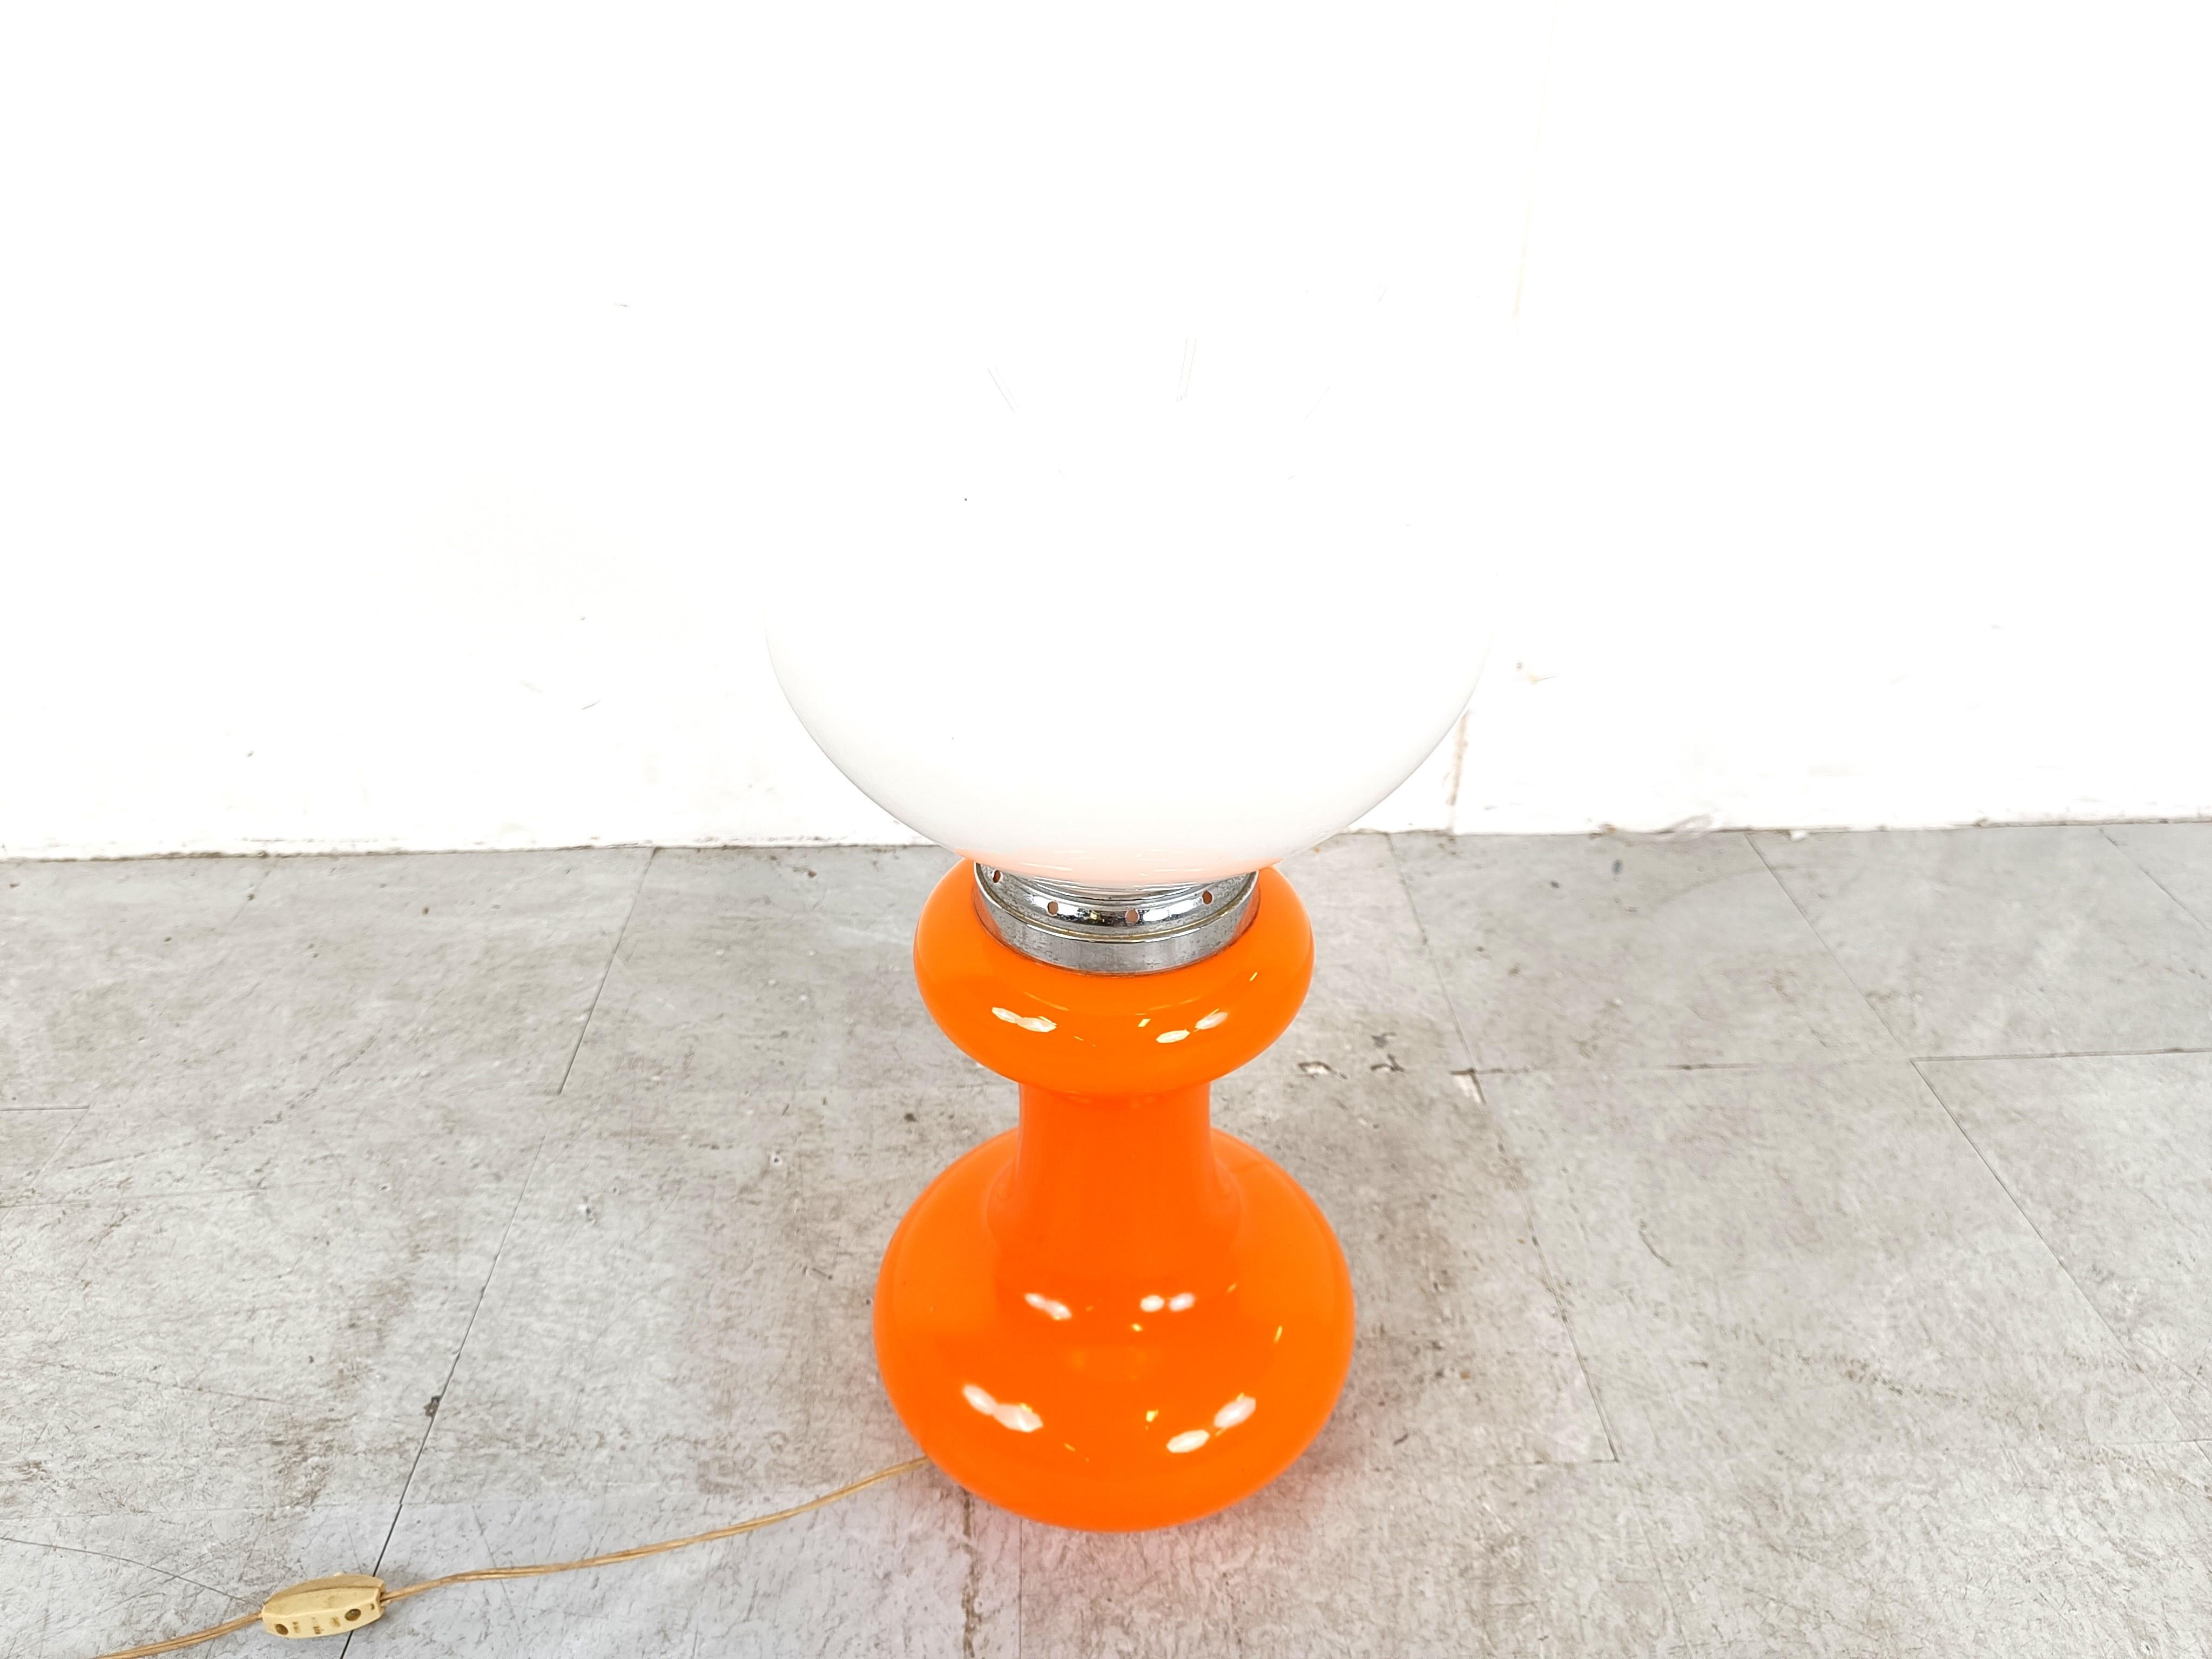 Lampe de table du milieu du siècle par Mazzega avec verre opalin blanc et orange et chrome.

Belle lampe du milieu du siècle qui émet une douce lumière tamisée.

Bon état, testé et prêt à être utilisé.

Années 1960 - Italie

Hauteur :